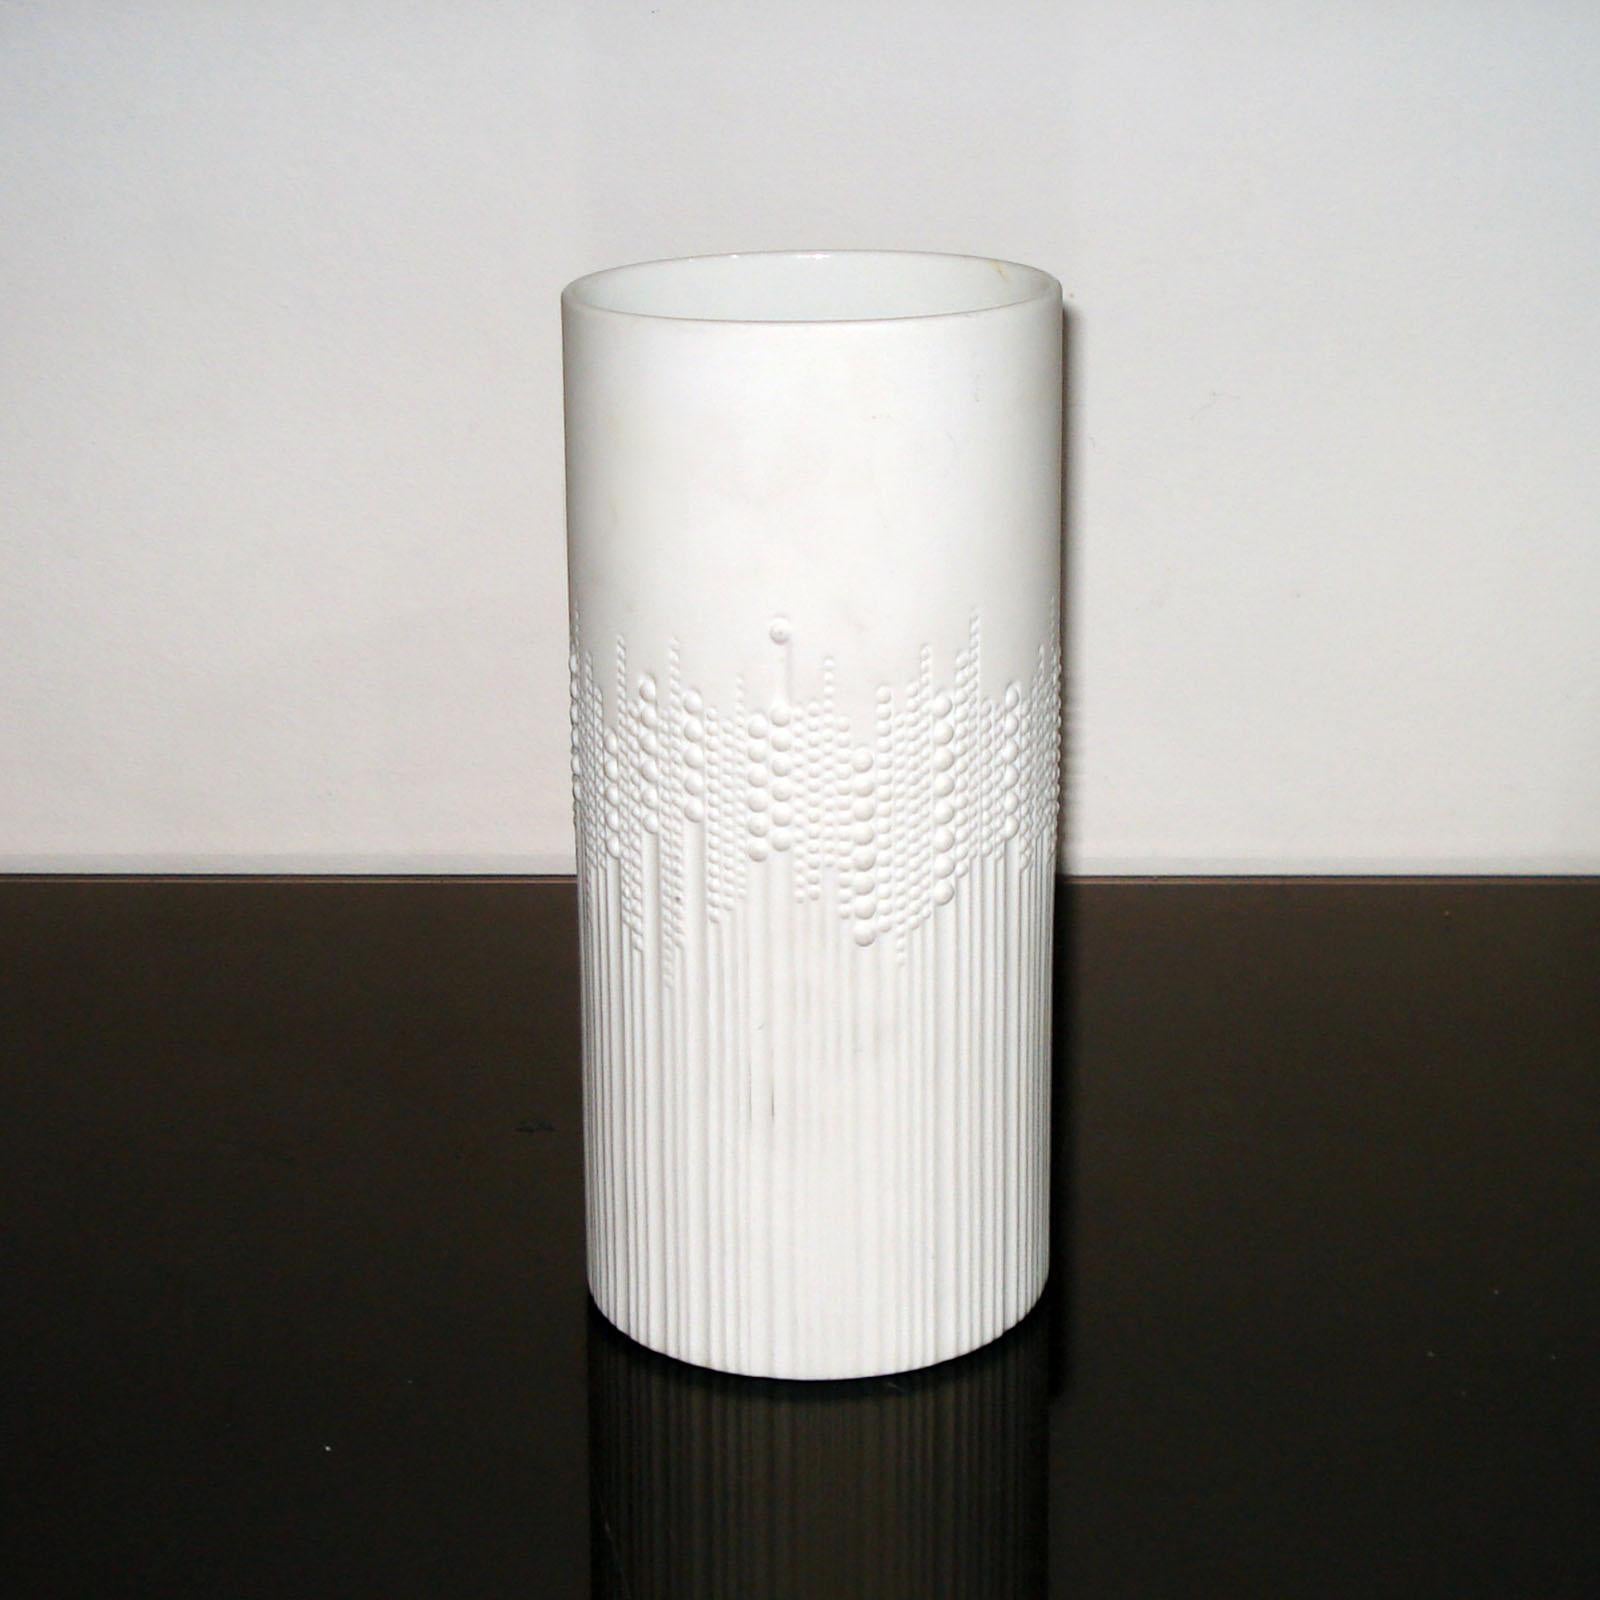 Ce grand vase en porcelaine blanche de forme ovoïde a été conçu en 1970 par Tapio Wirkkala pour Rosenthal Studio. La ligne 